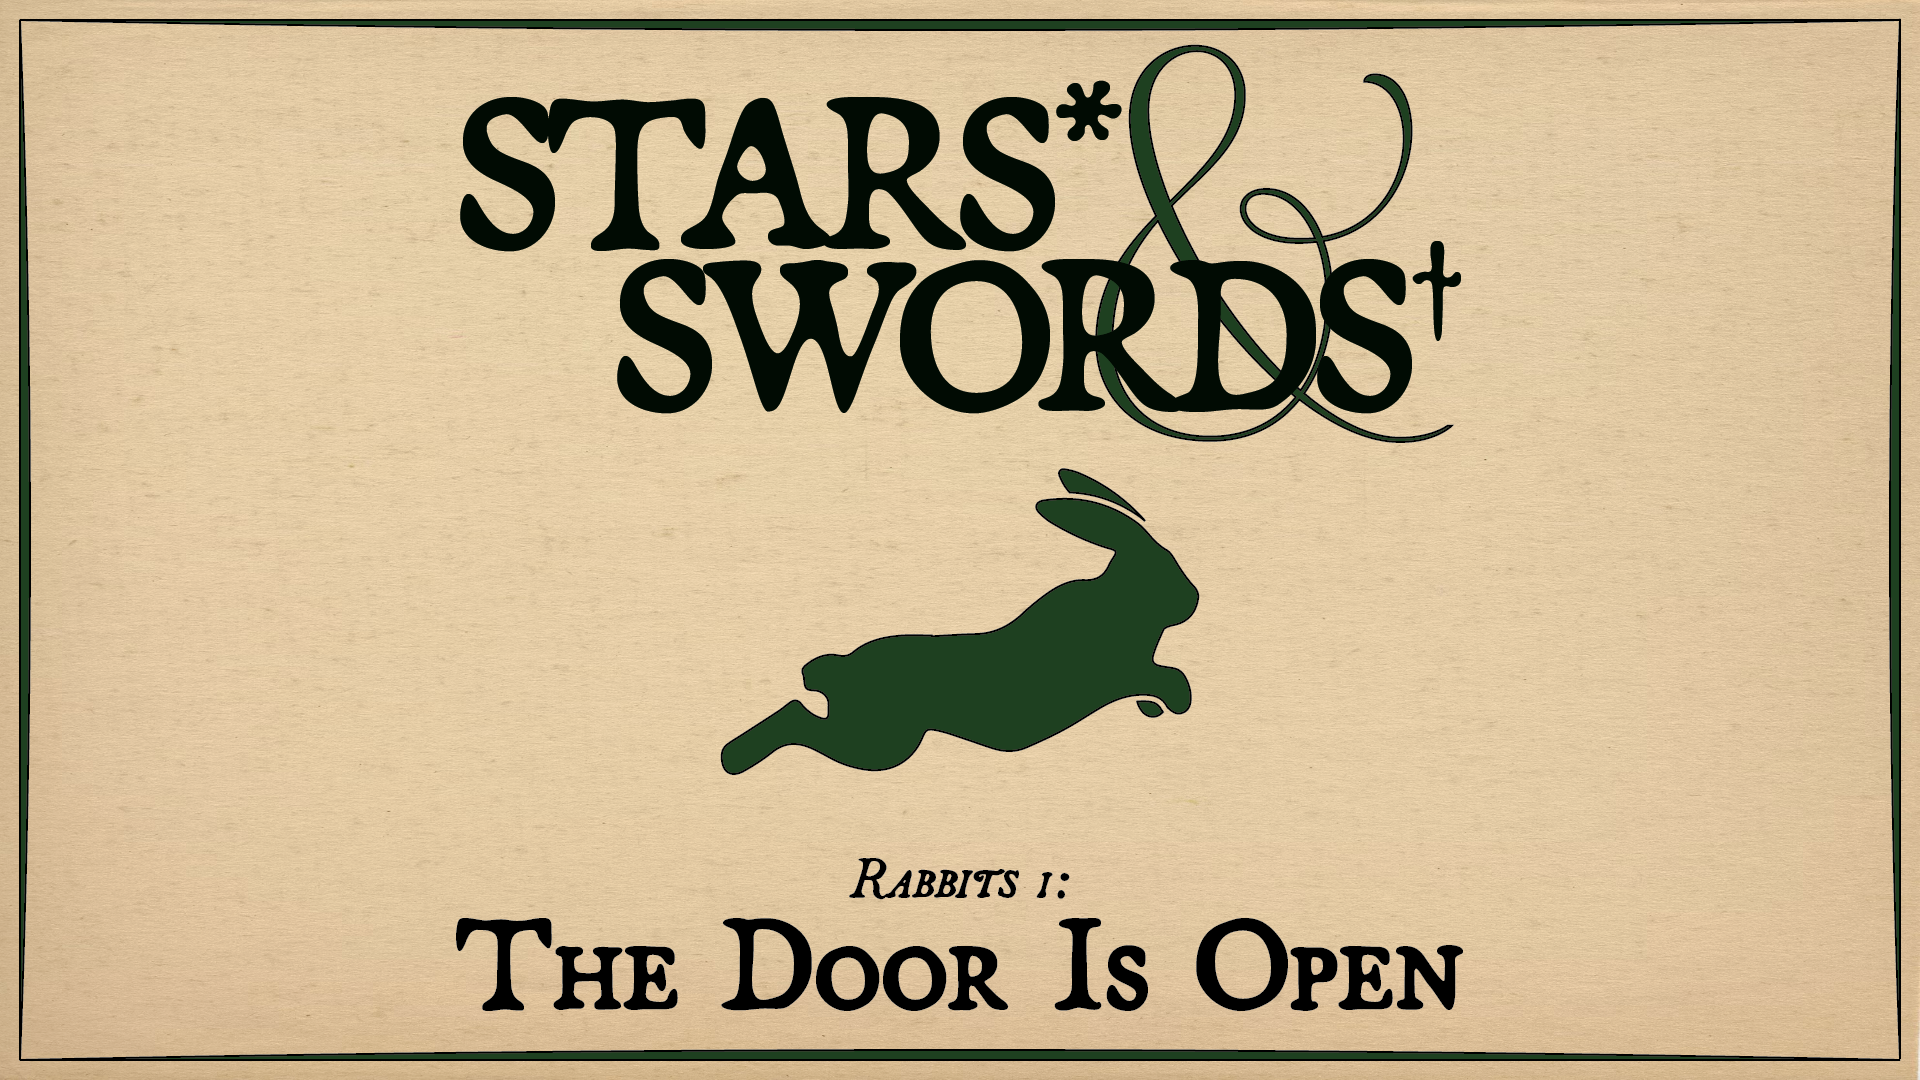 Rabbits 1: The Door Is Open